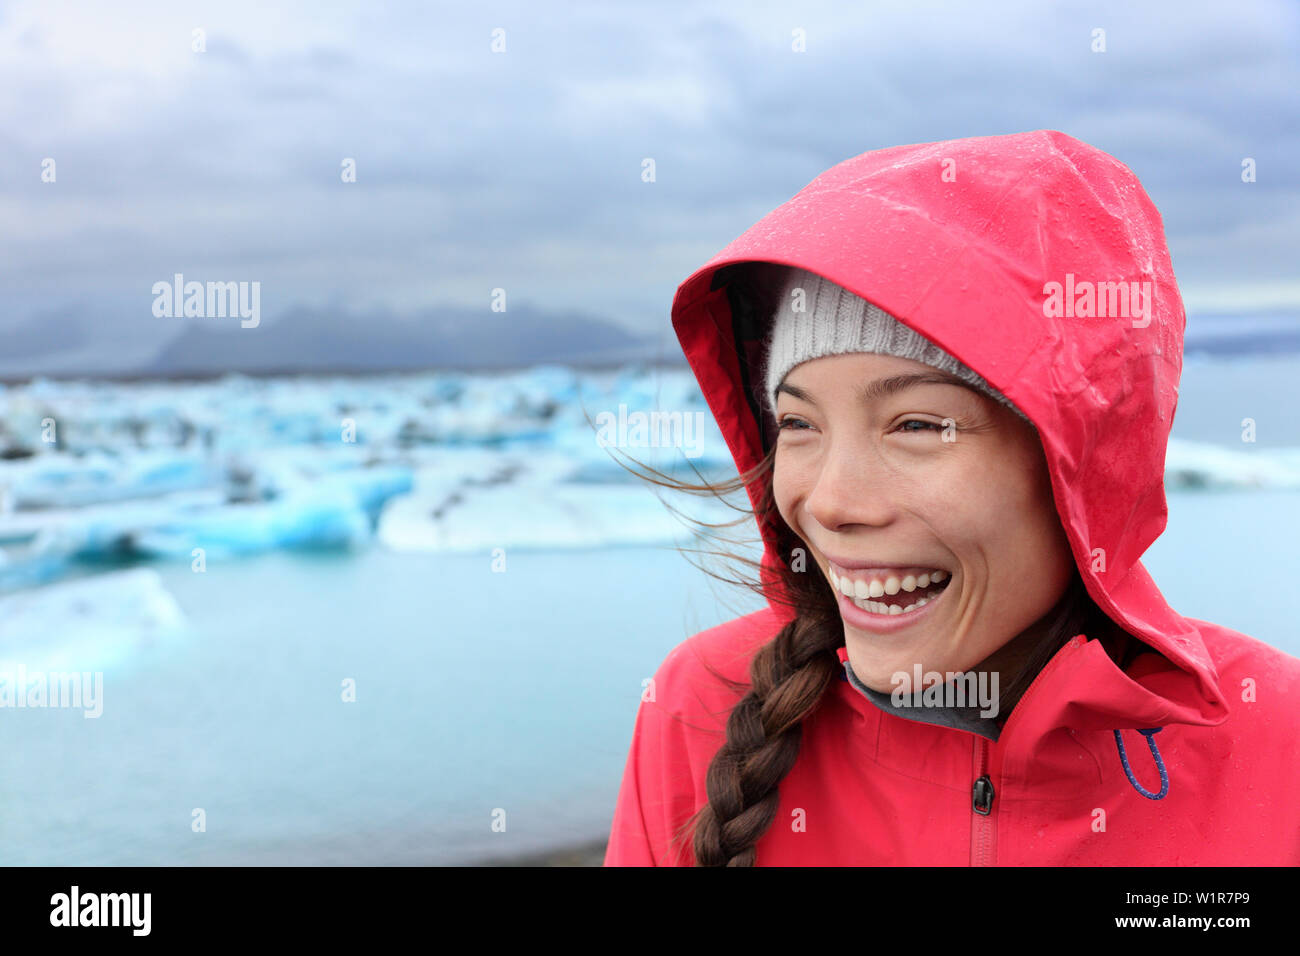 Dans Outdoors Woman veste imperméable rigide à glacier lagoon sur l'Islande. Happy smiling tourist girl enjoying view de lac glaciaire Jökulsárlón belle nature paysage islandais avec des icebergs. Banque D'Images